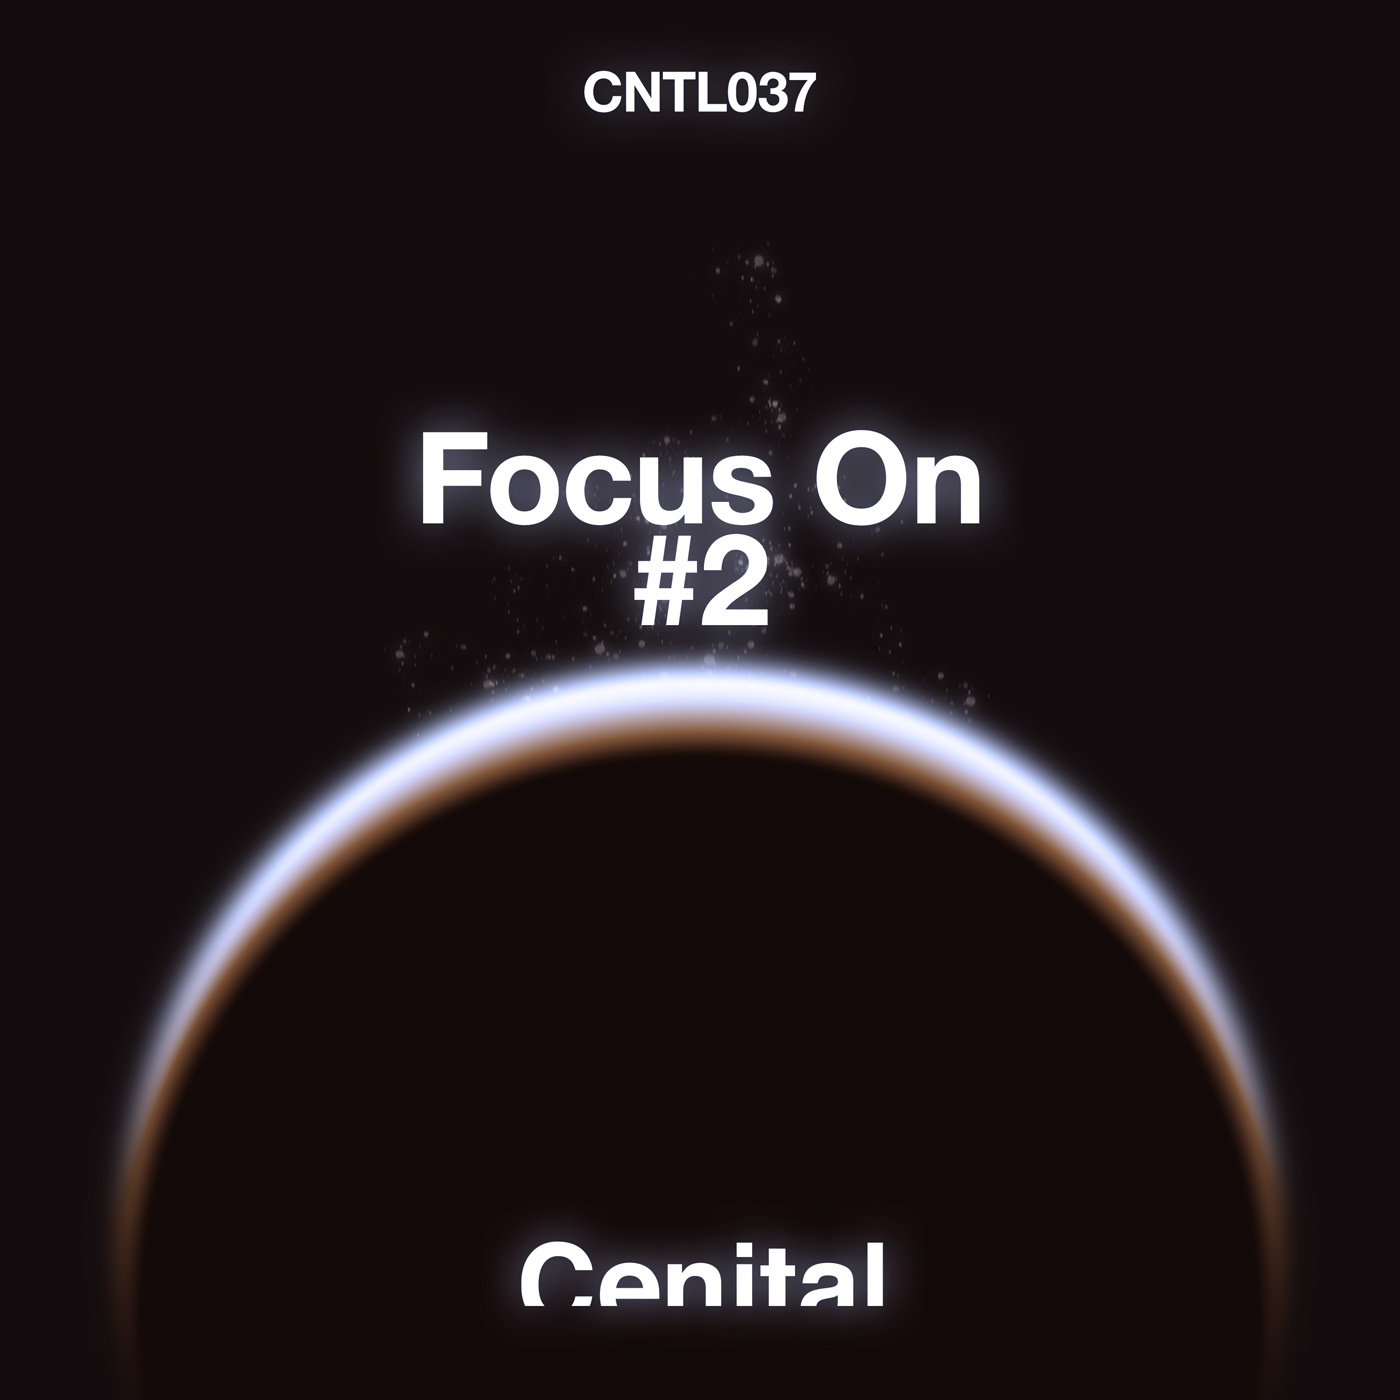 Focus On 2 [CNLT037]